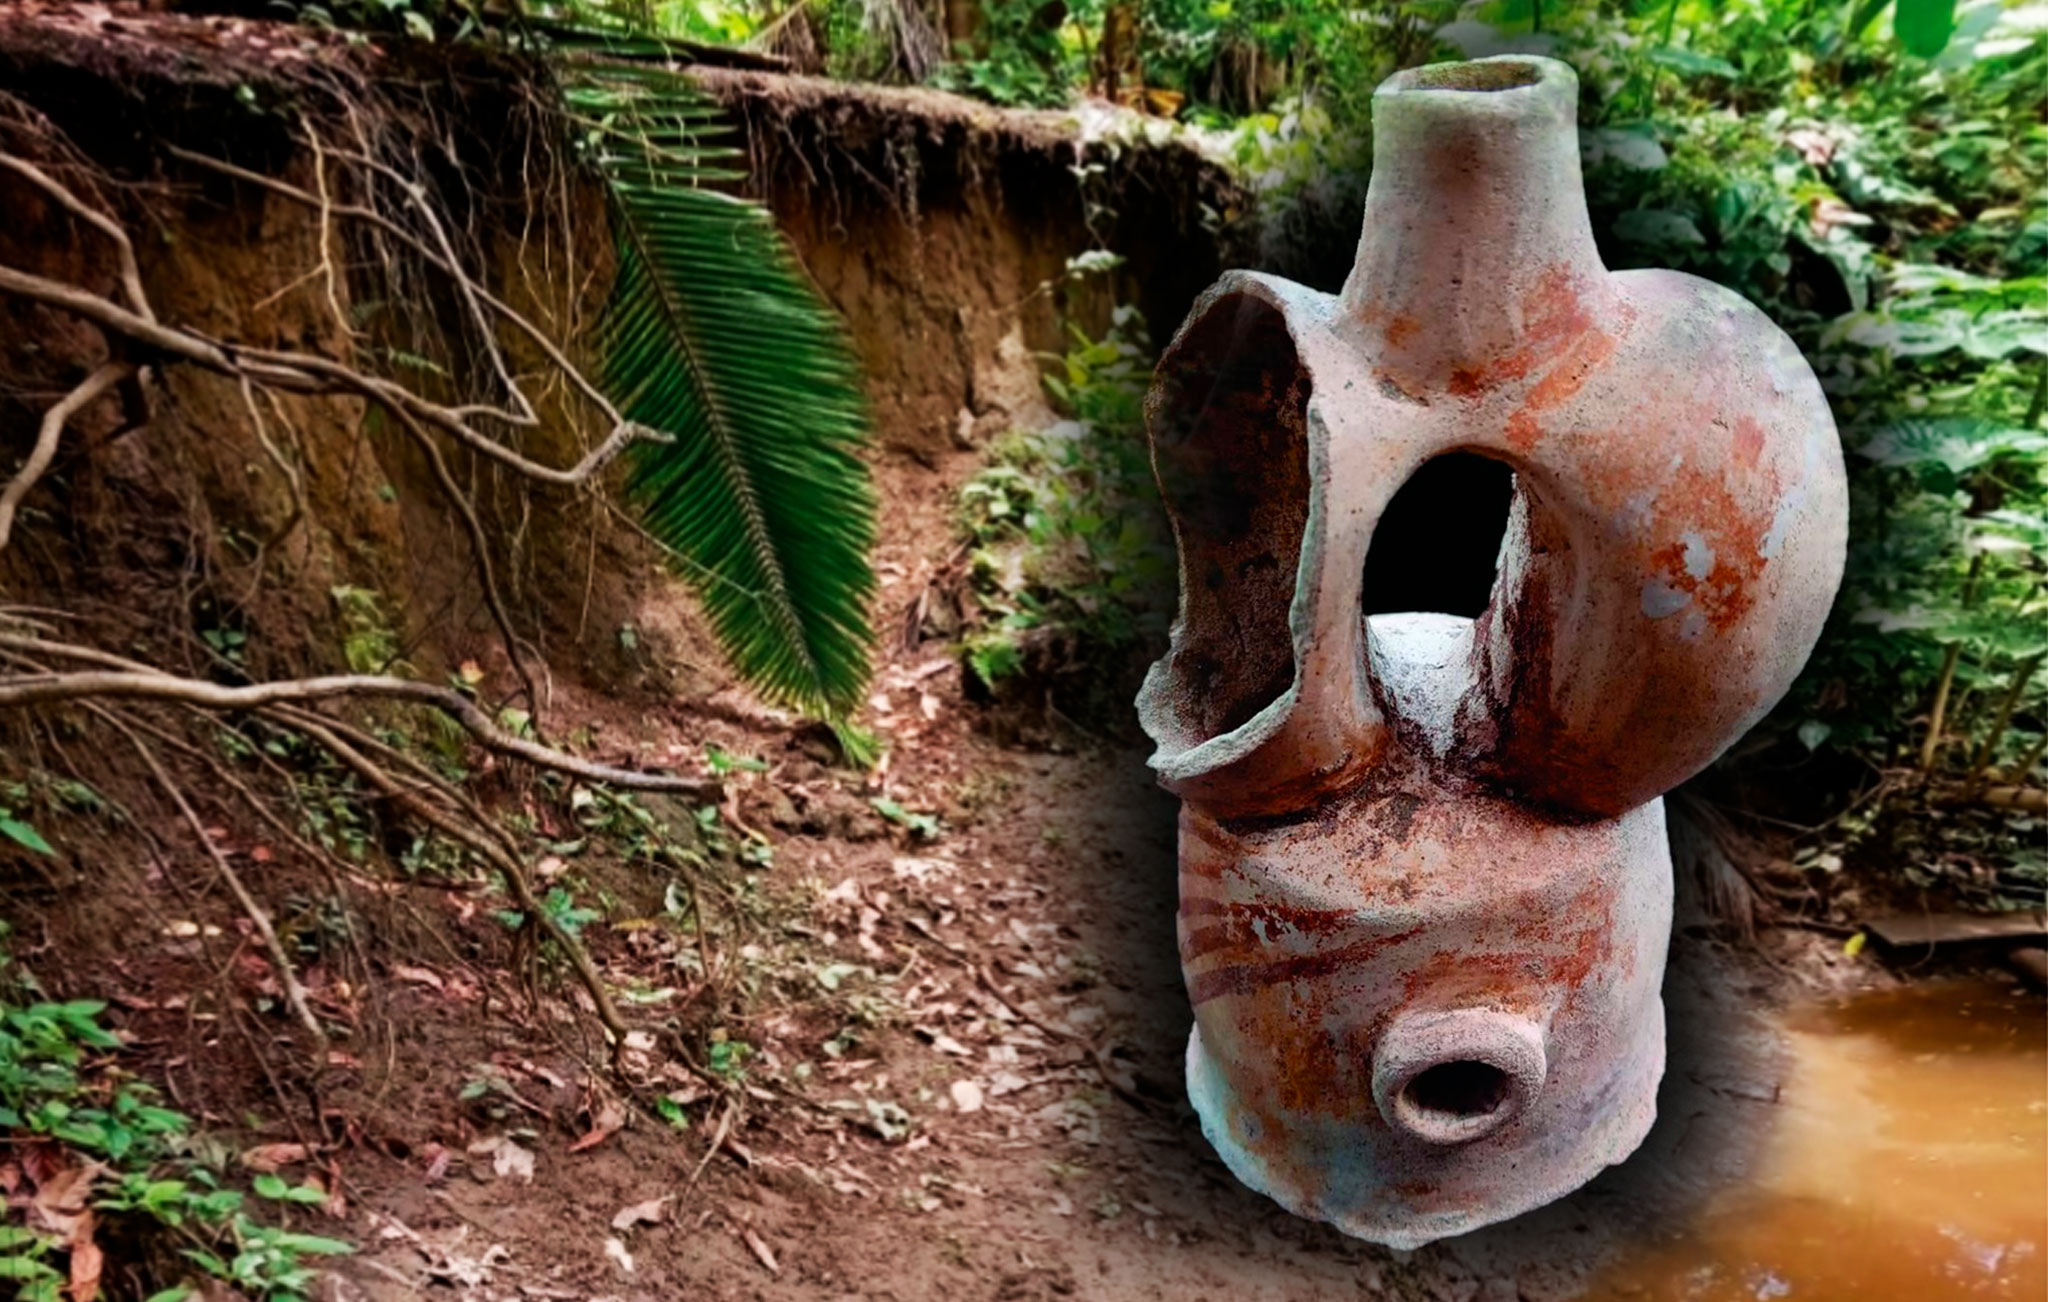 
                                 Descubrimiento sin precedentes: encuentran en Perú piezas que confirman presencia de culturas ancestrales en Amazonas 
                            